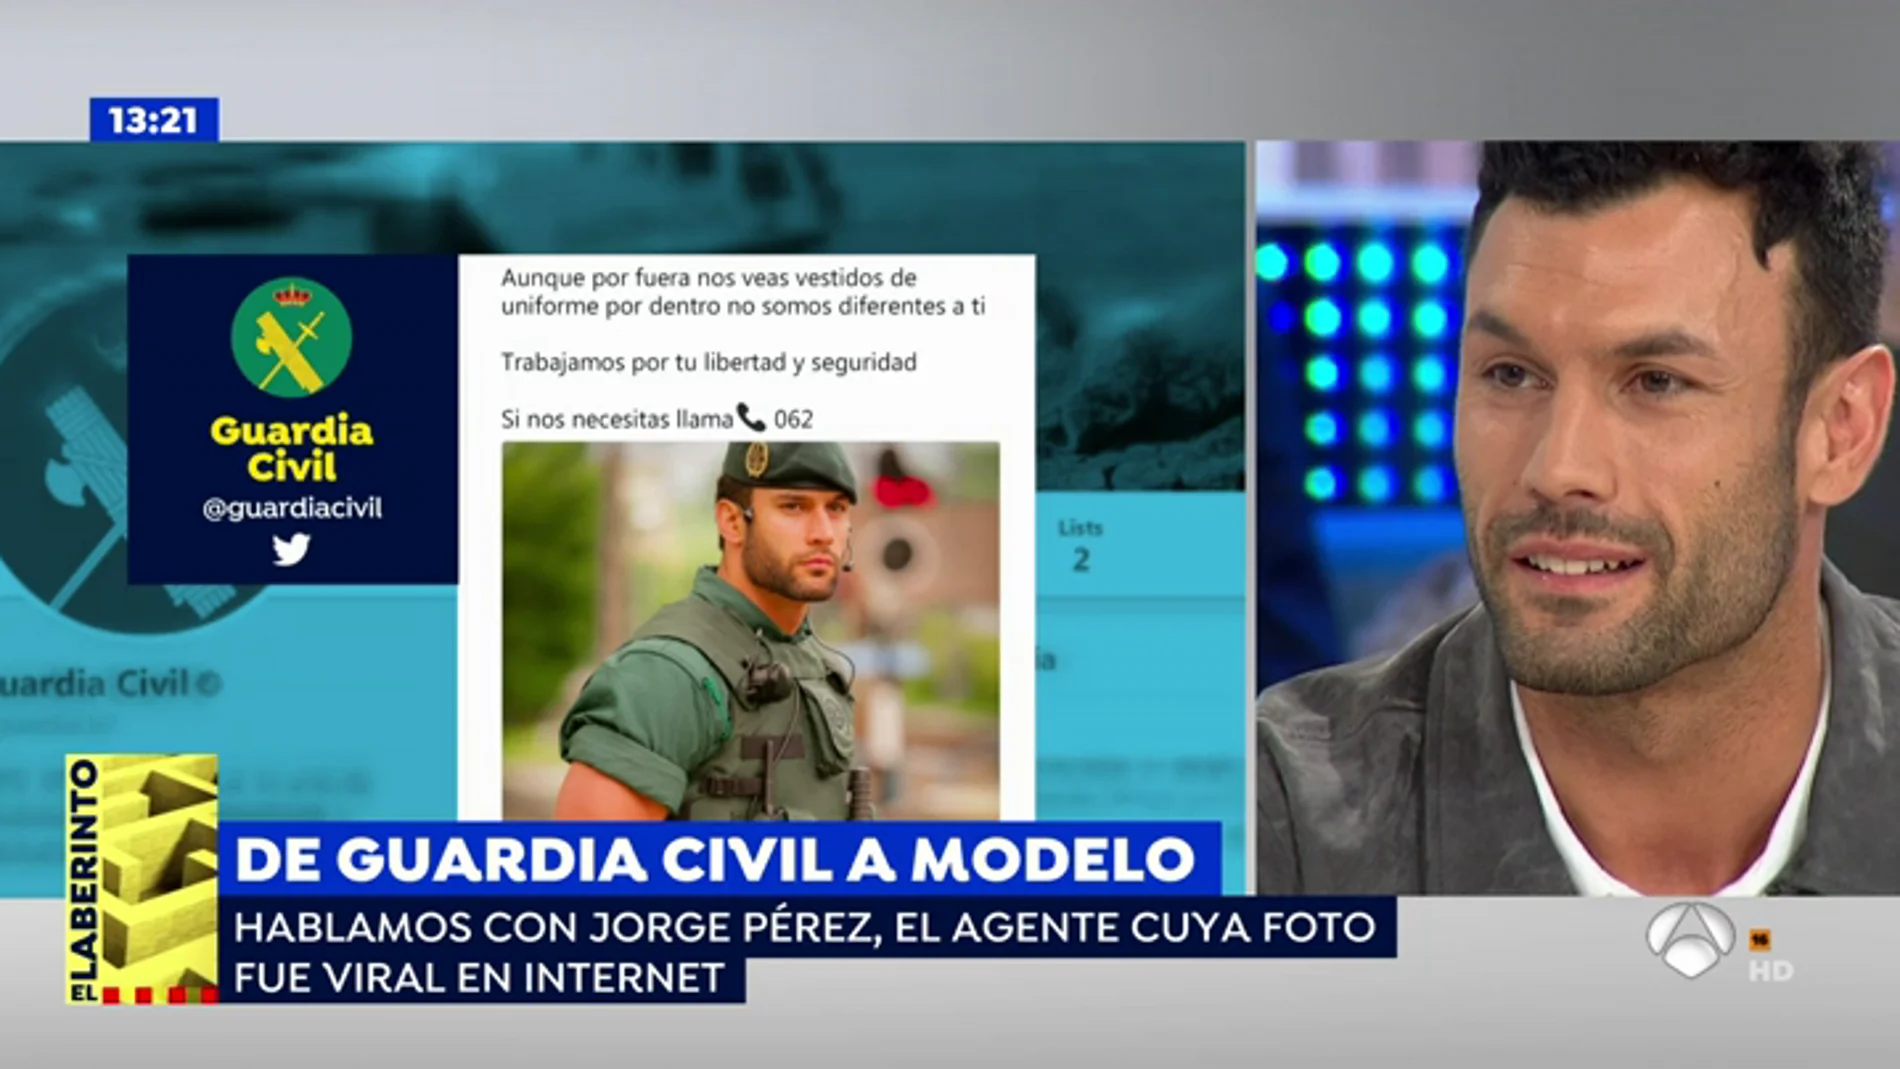 <p>Jorge Pérez, el guardia civil que se hizo famoso, sobre los piropos en redes: "Están enfocados en clave de humor y con respeto" </p>